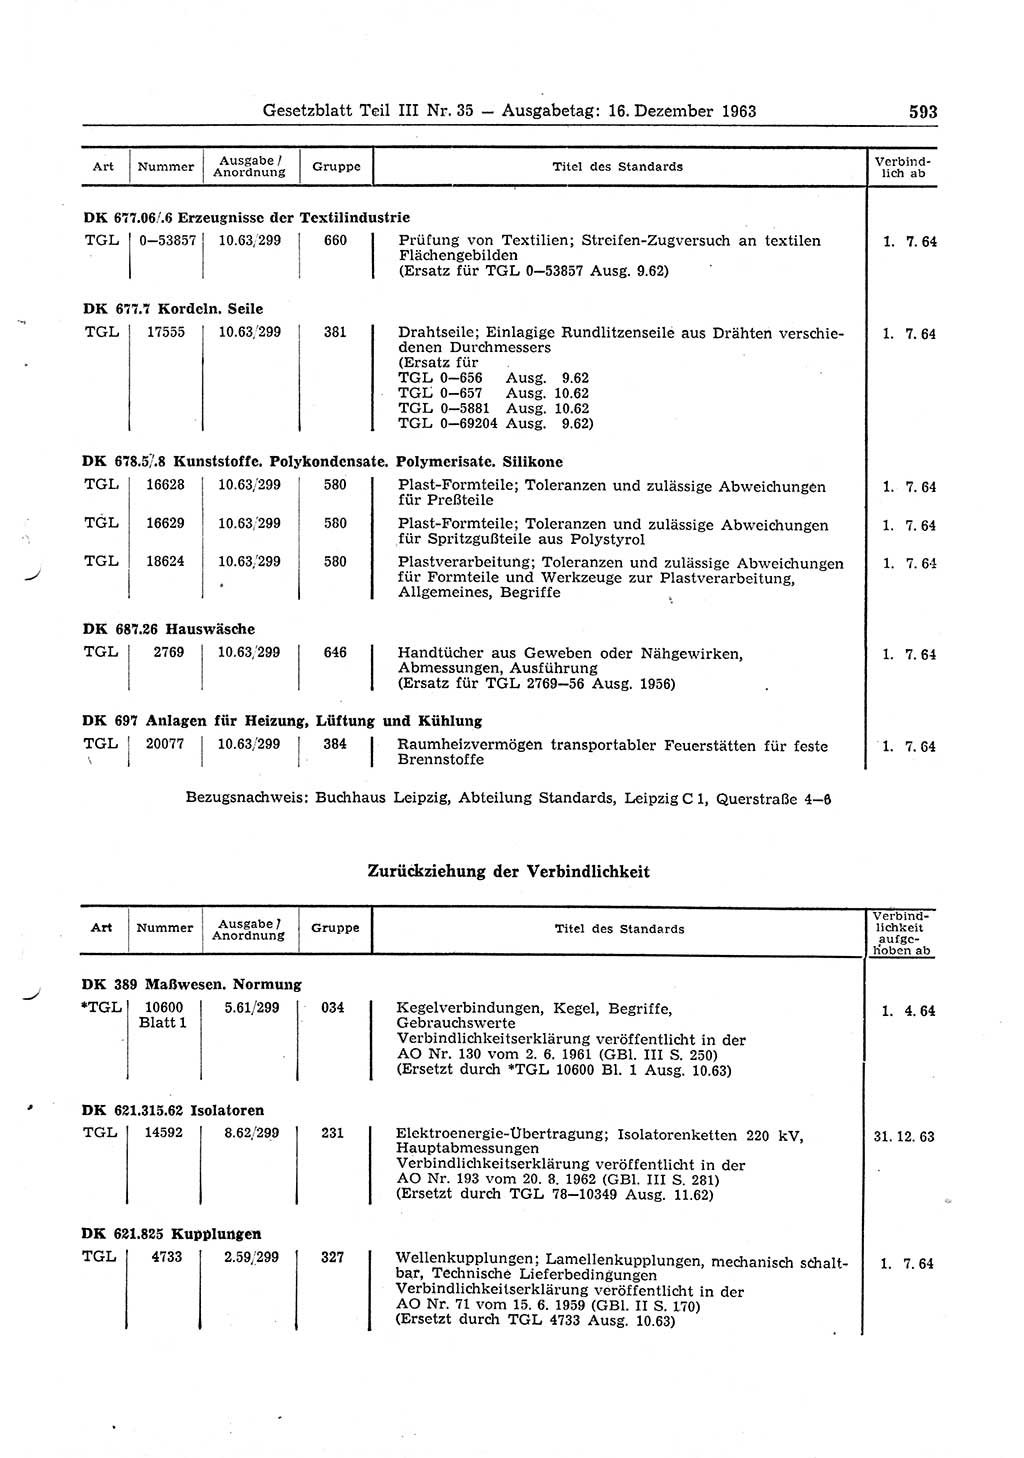 Gesetzblatt (GBl.) der Deutschen Demokratischen Republik (DDR) Teil ⅠⅠⅠ 1963, Seite 593 (GBl. DDR ⅠⅠⅠ 1963, S. 593)